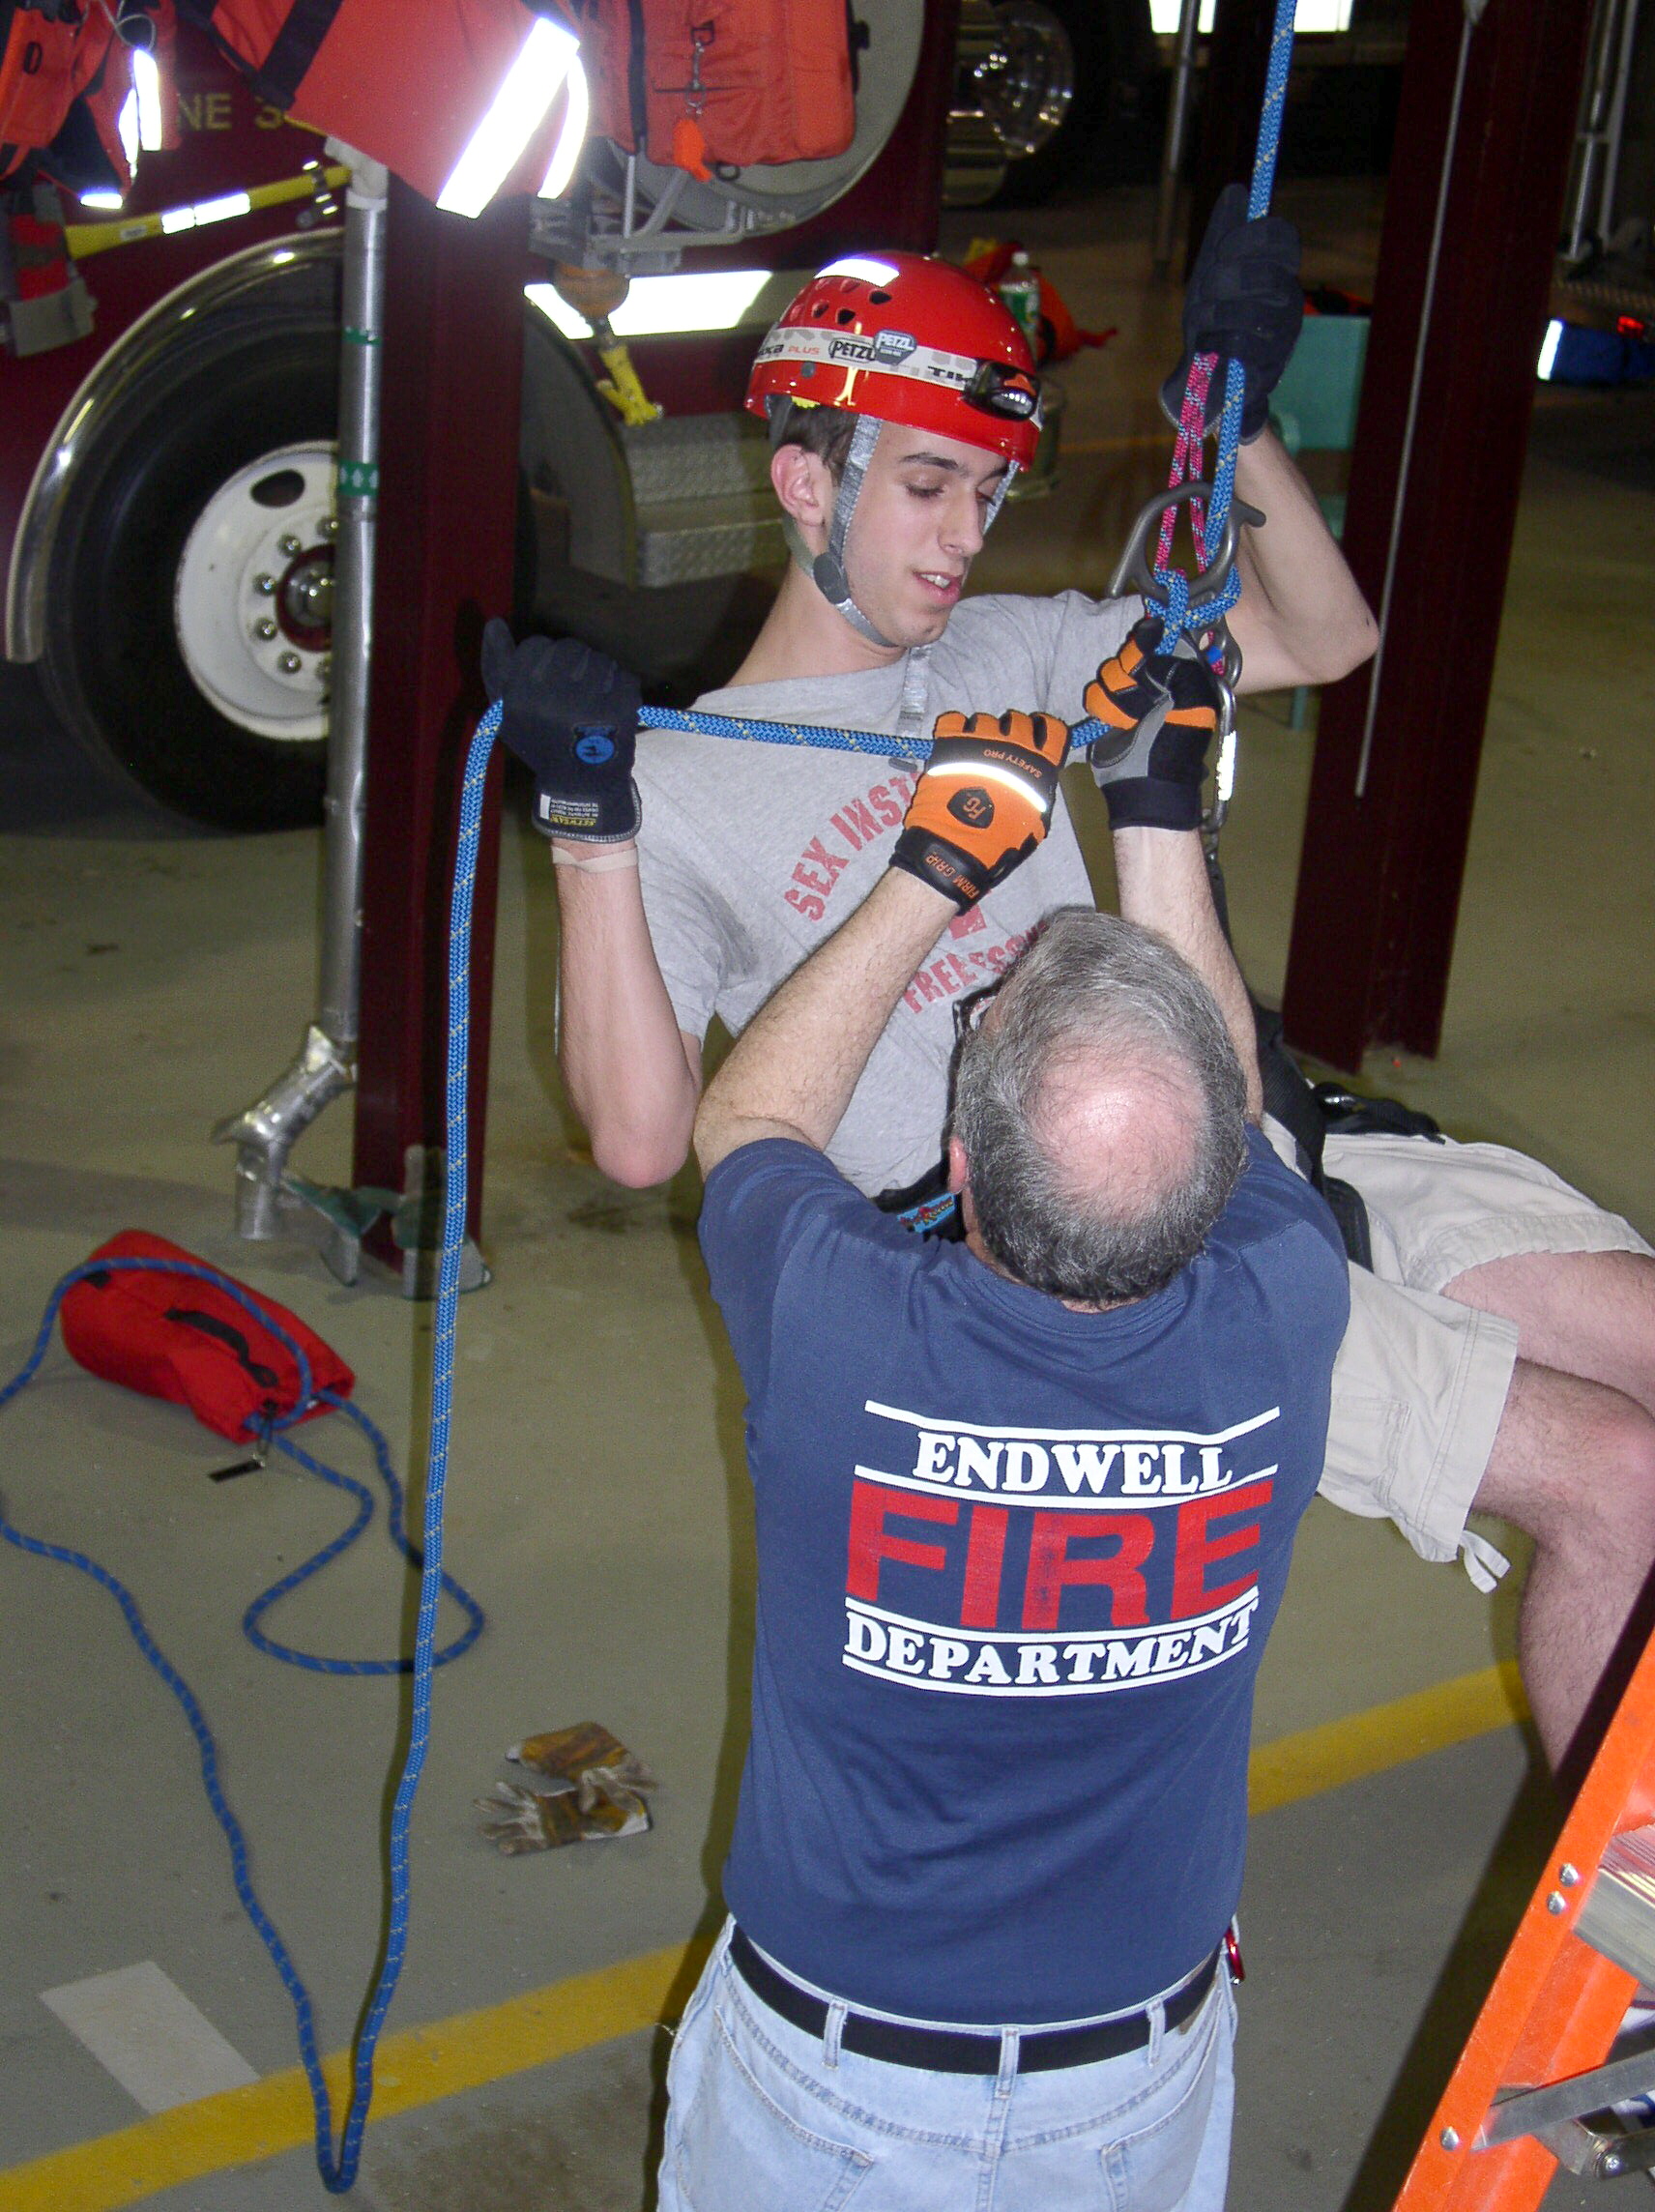 04-06-05  Training - Rope Rescue